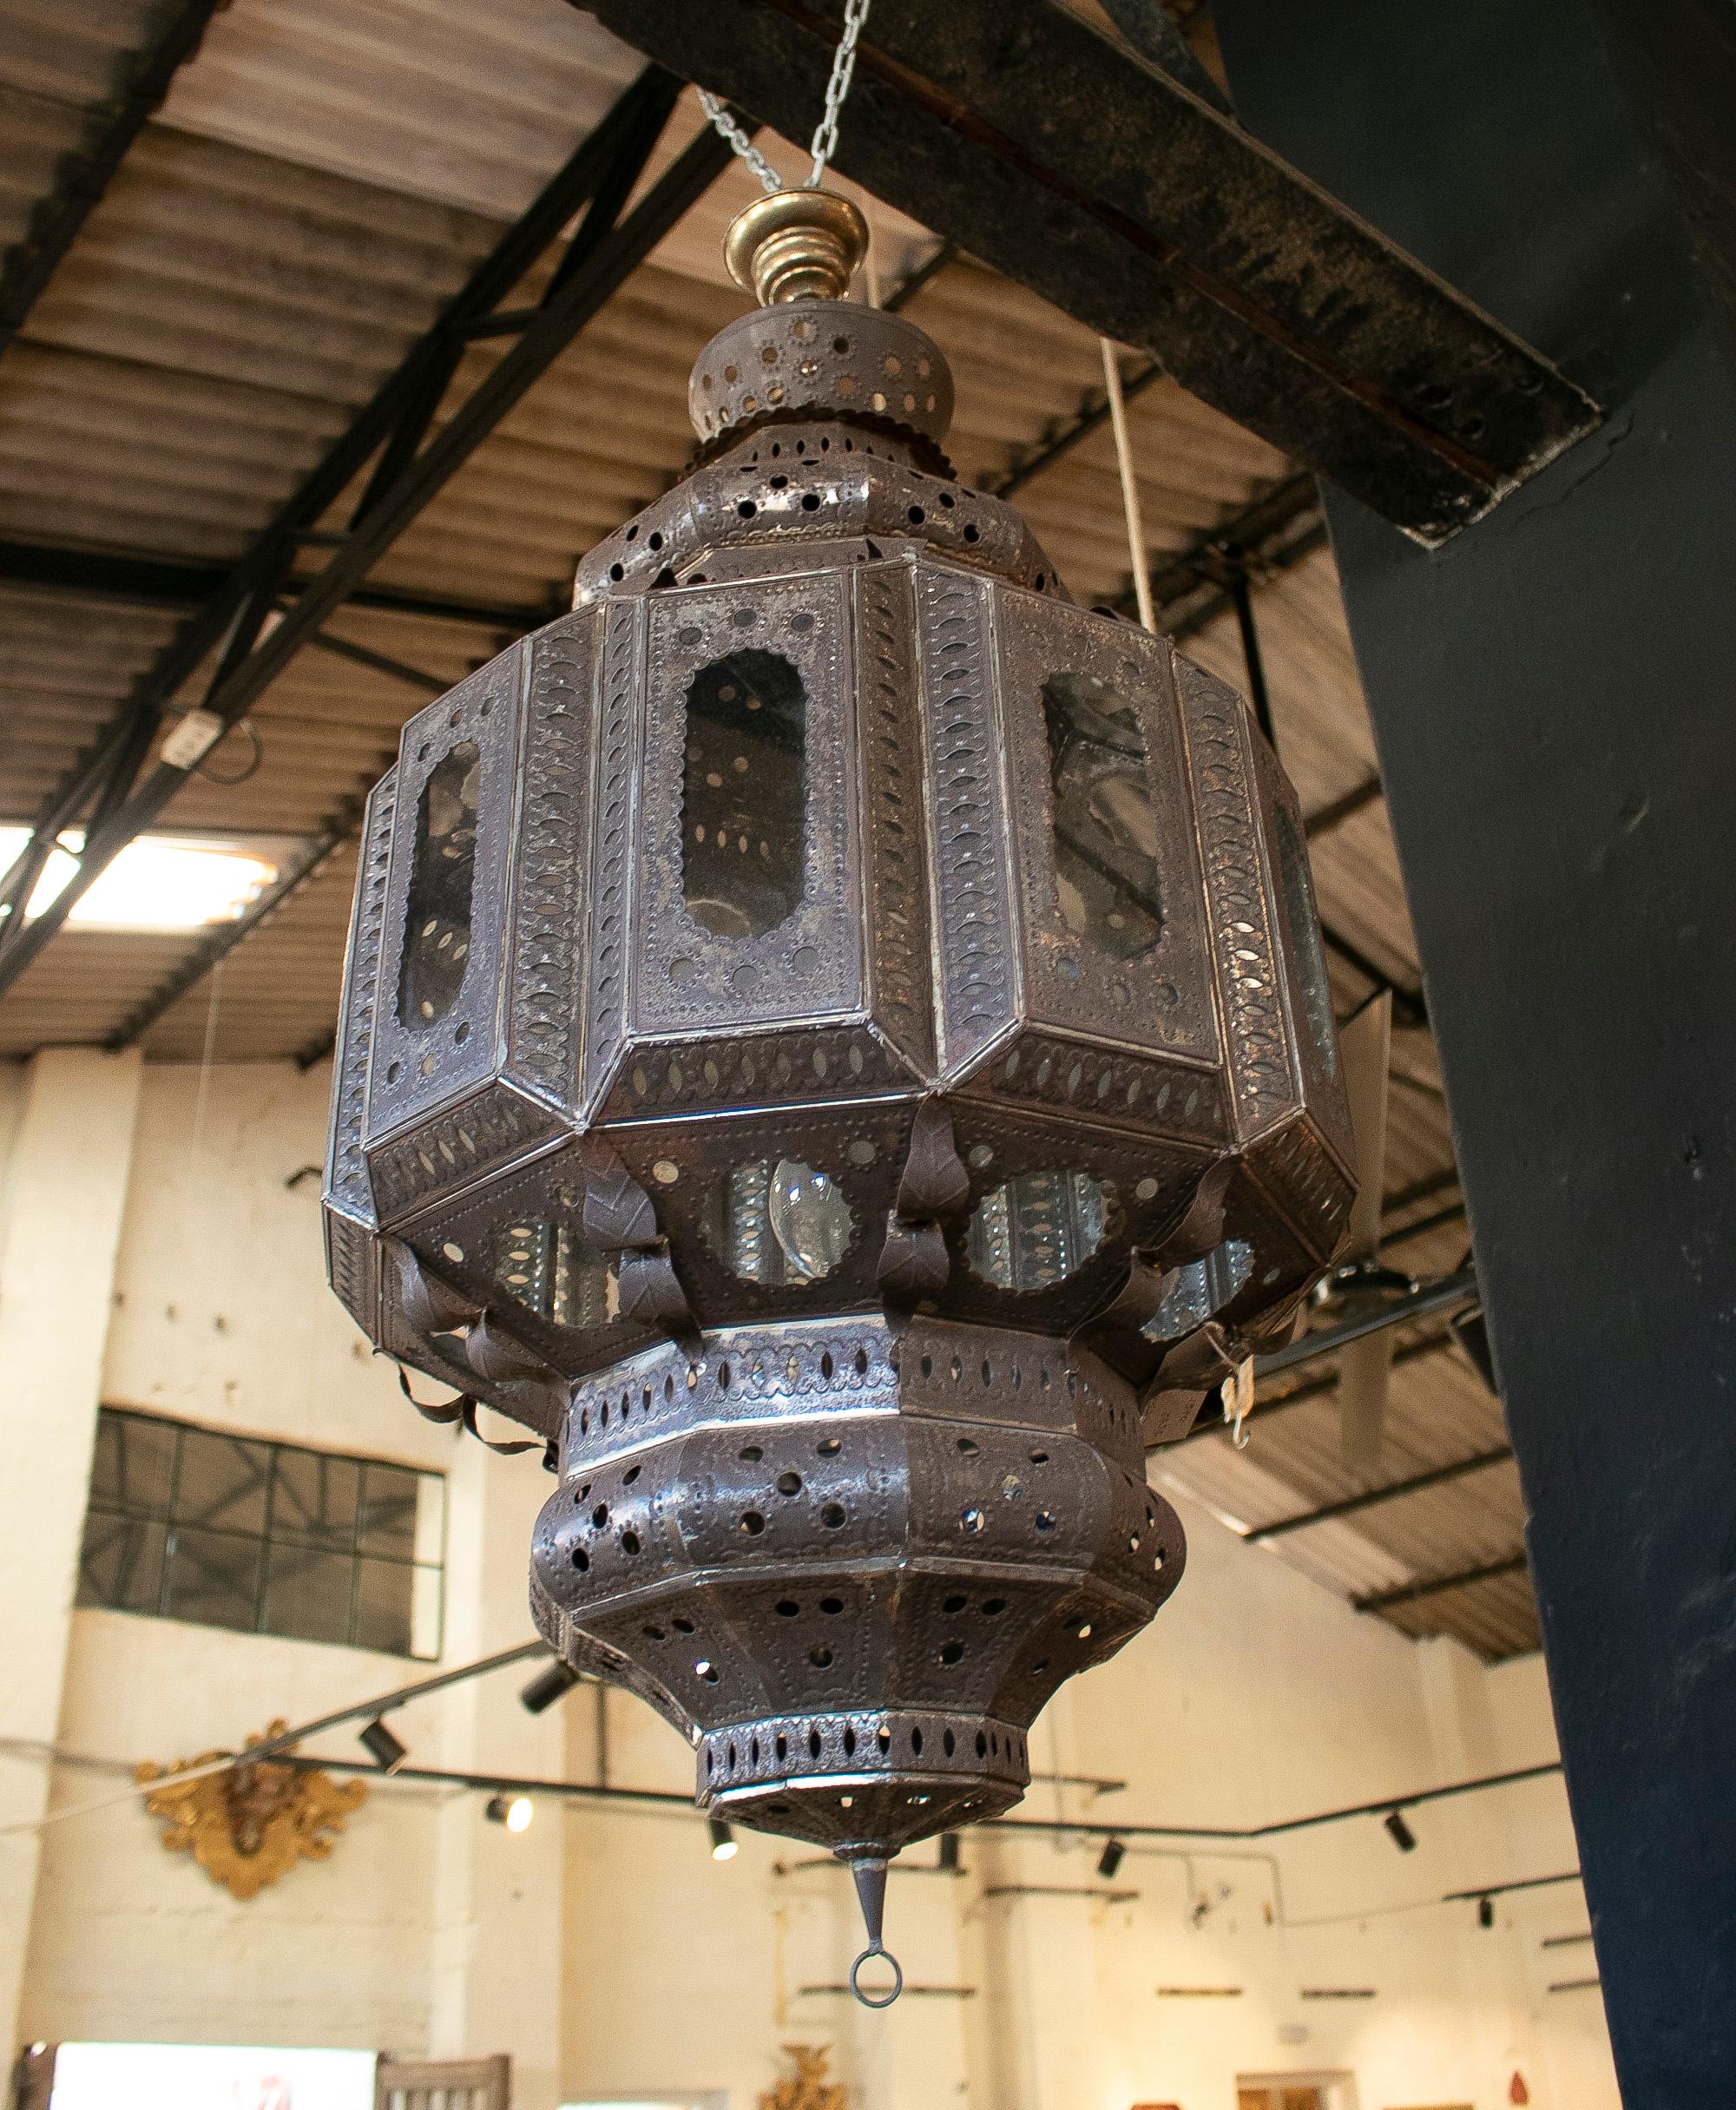 Pair of 1990s Spanish handmade iron ceiling hanging lamp lanterns.
    